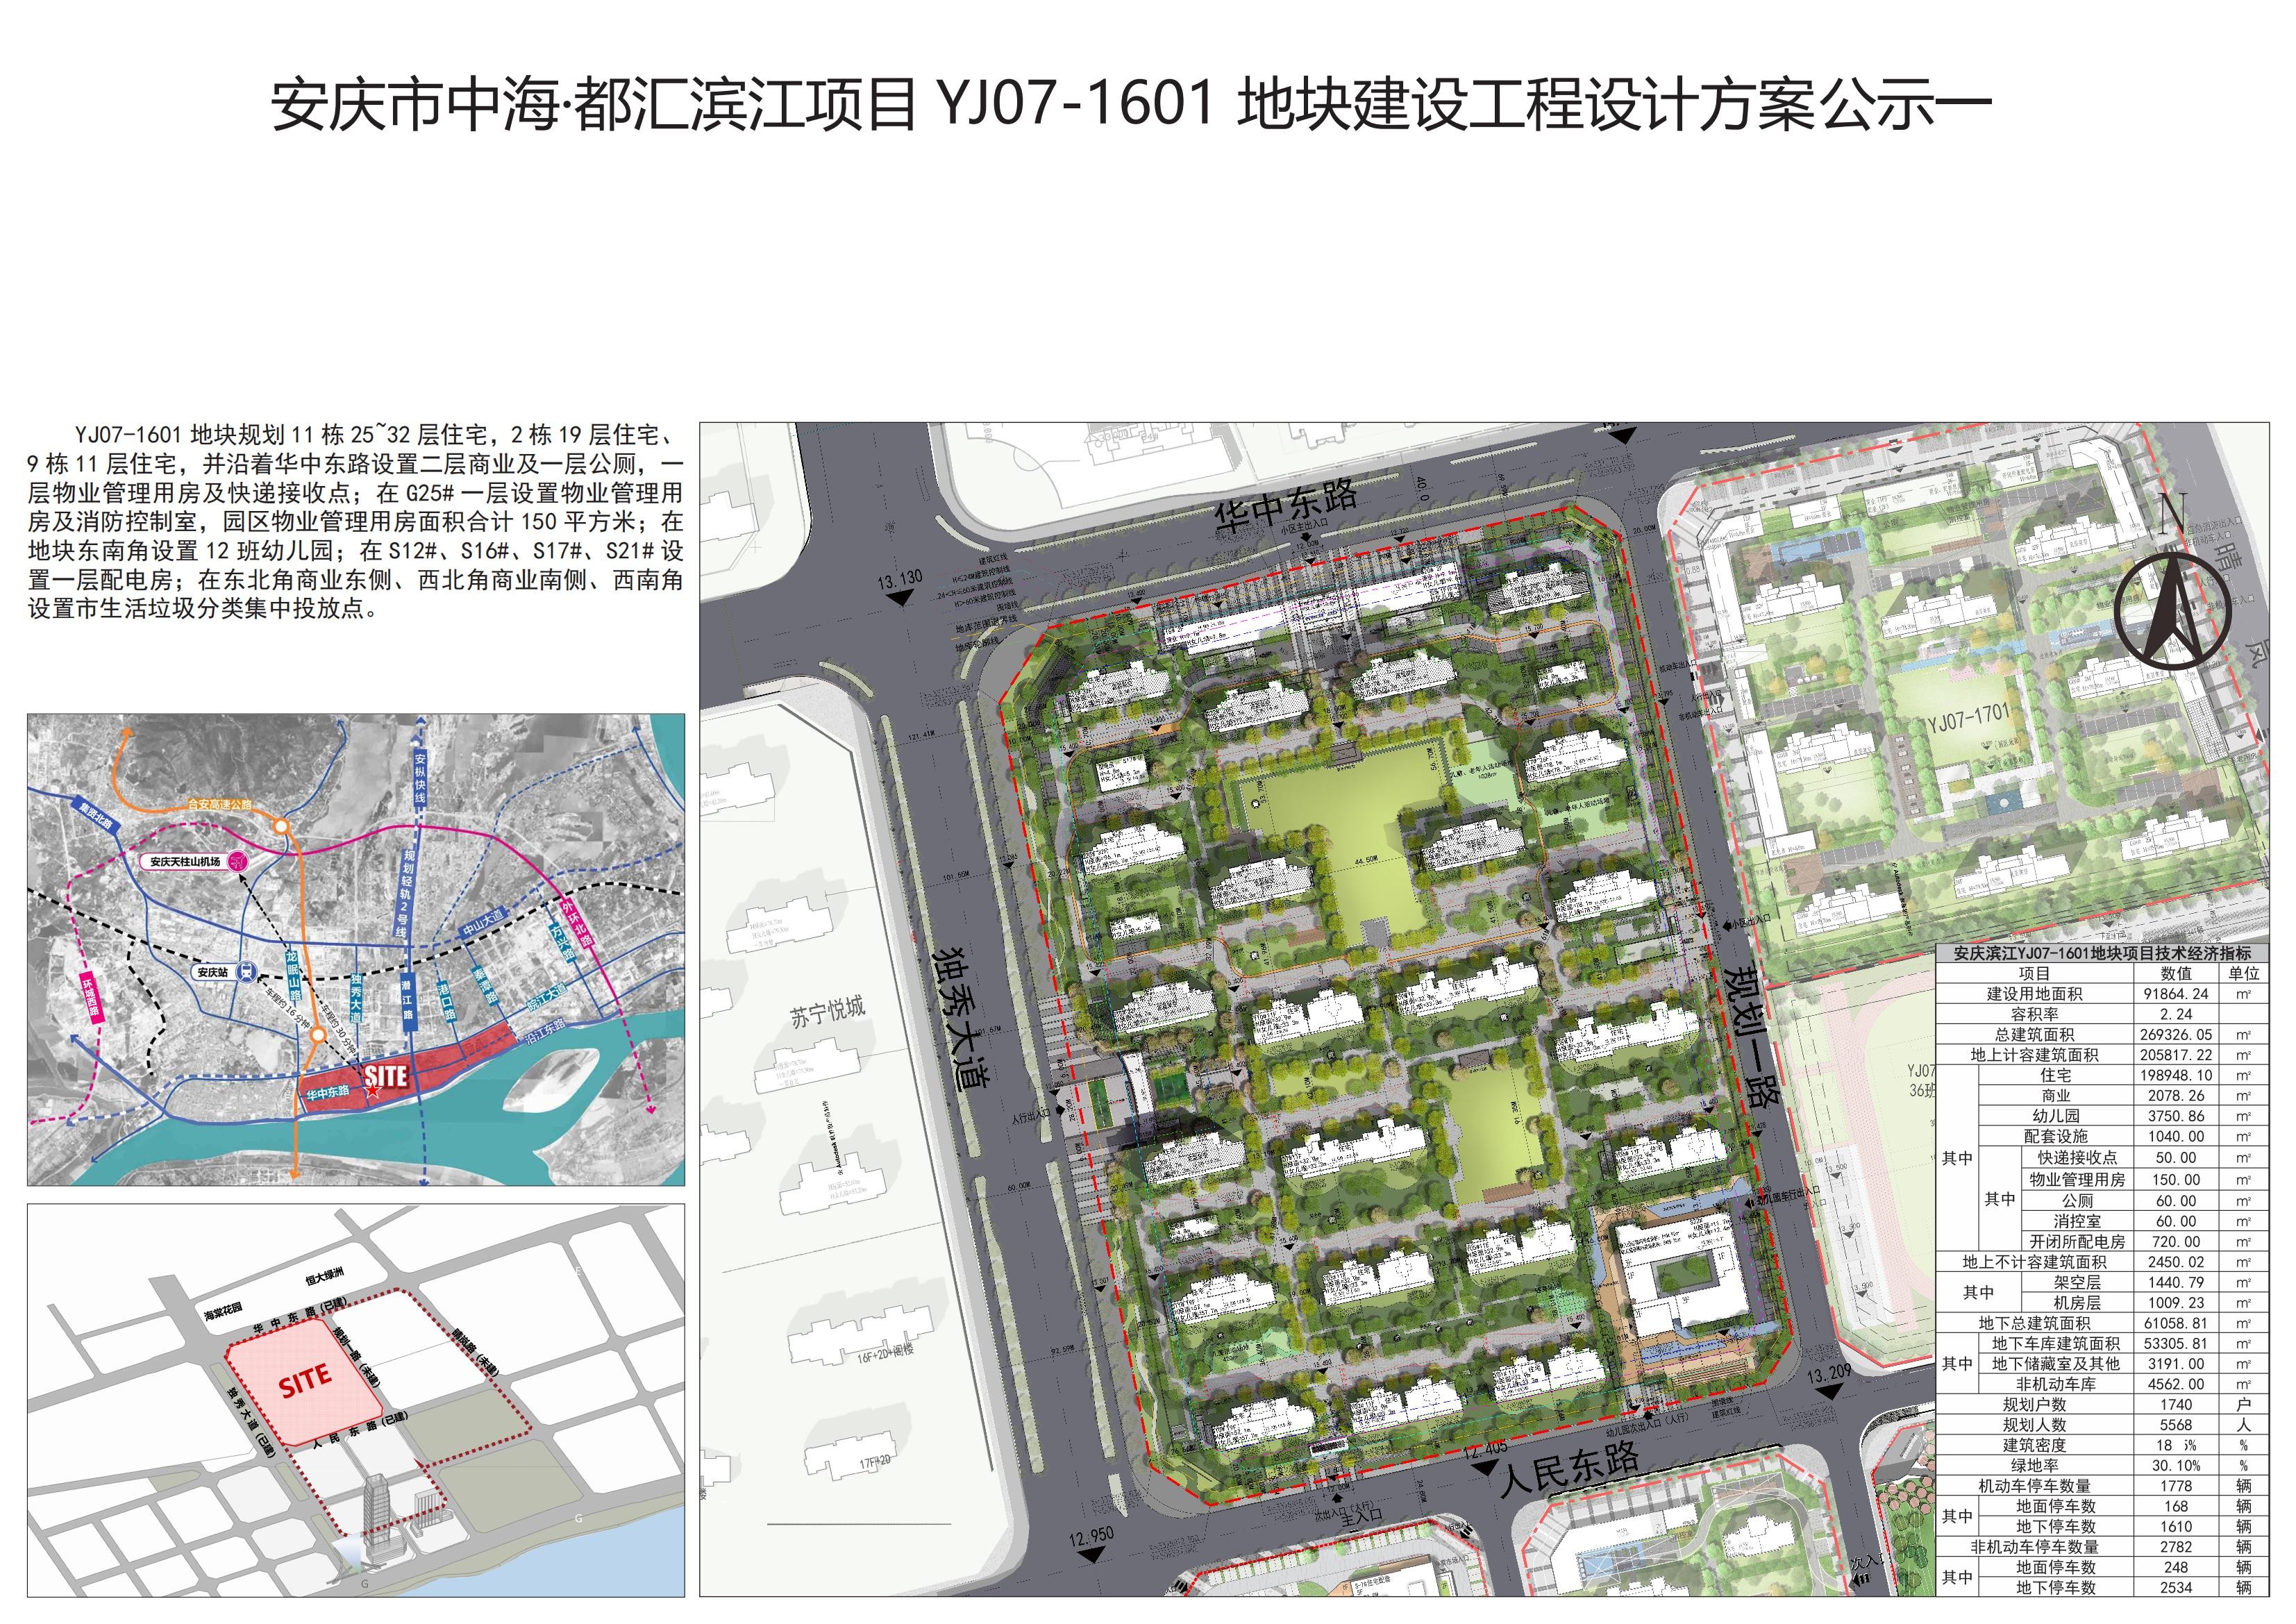 安庆市中海都汇滨江项目yj07160121012201地块建设工程设计方案公示